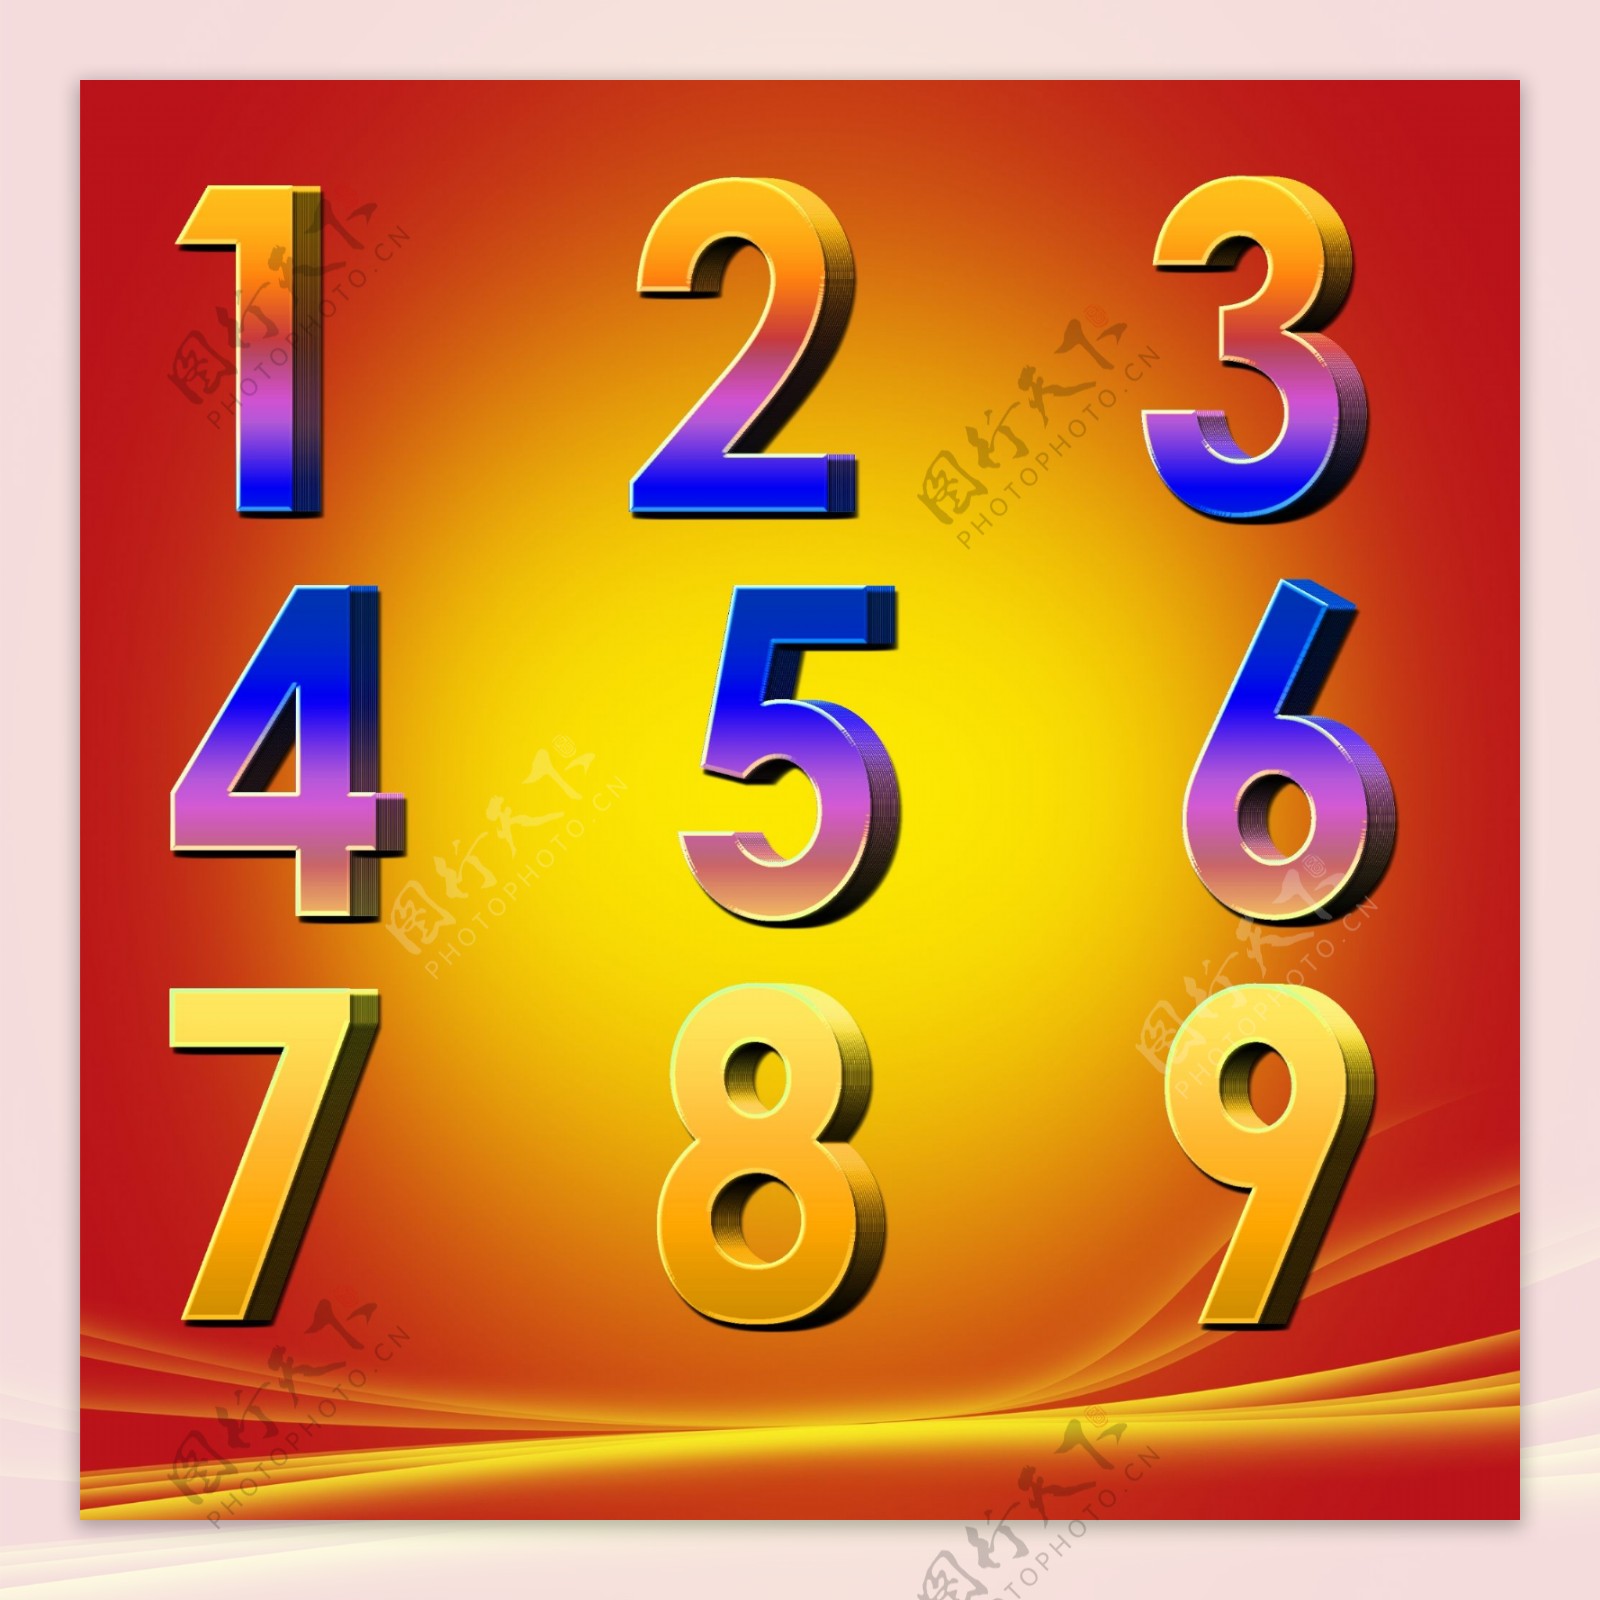 立体数字3d数字3d阿拉伯数字3D立体金色数字123456789图片